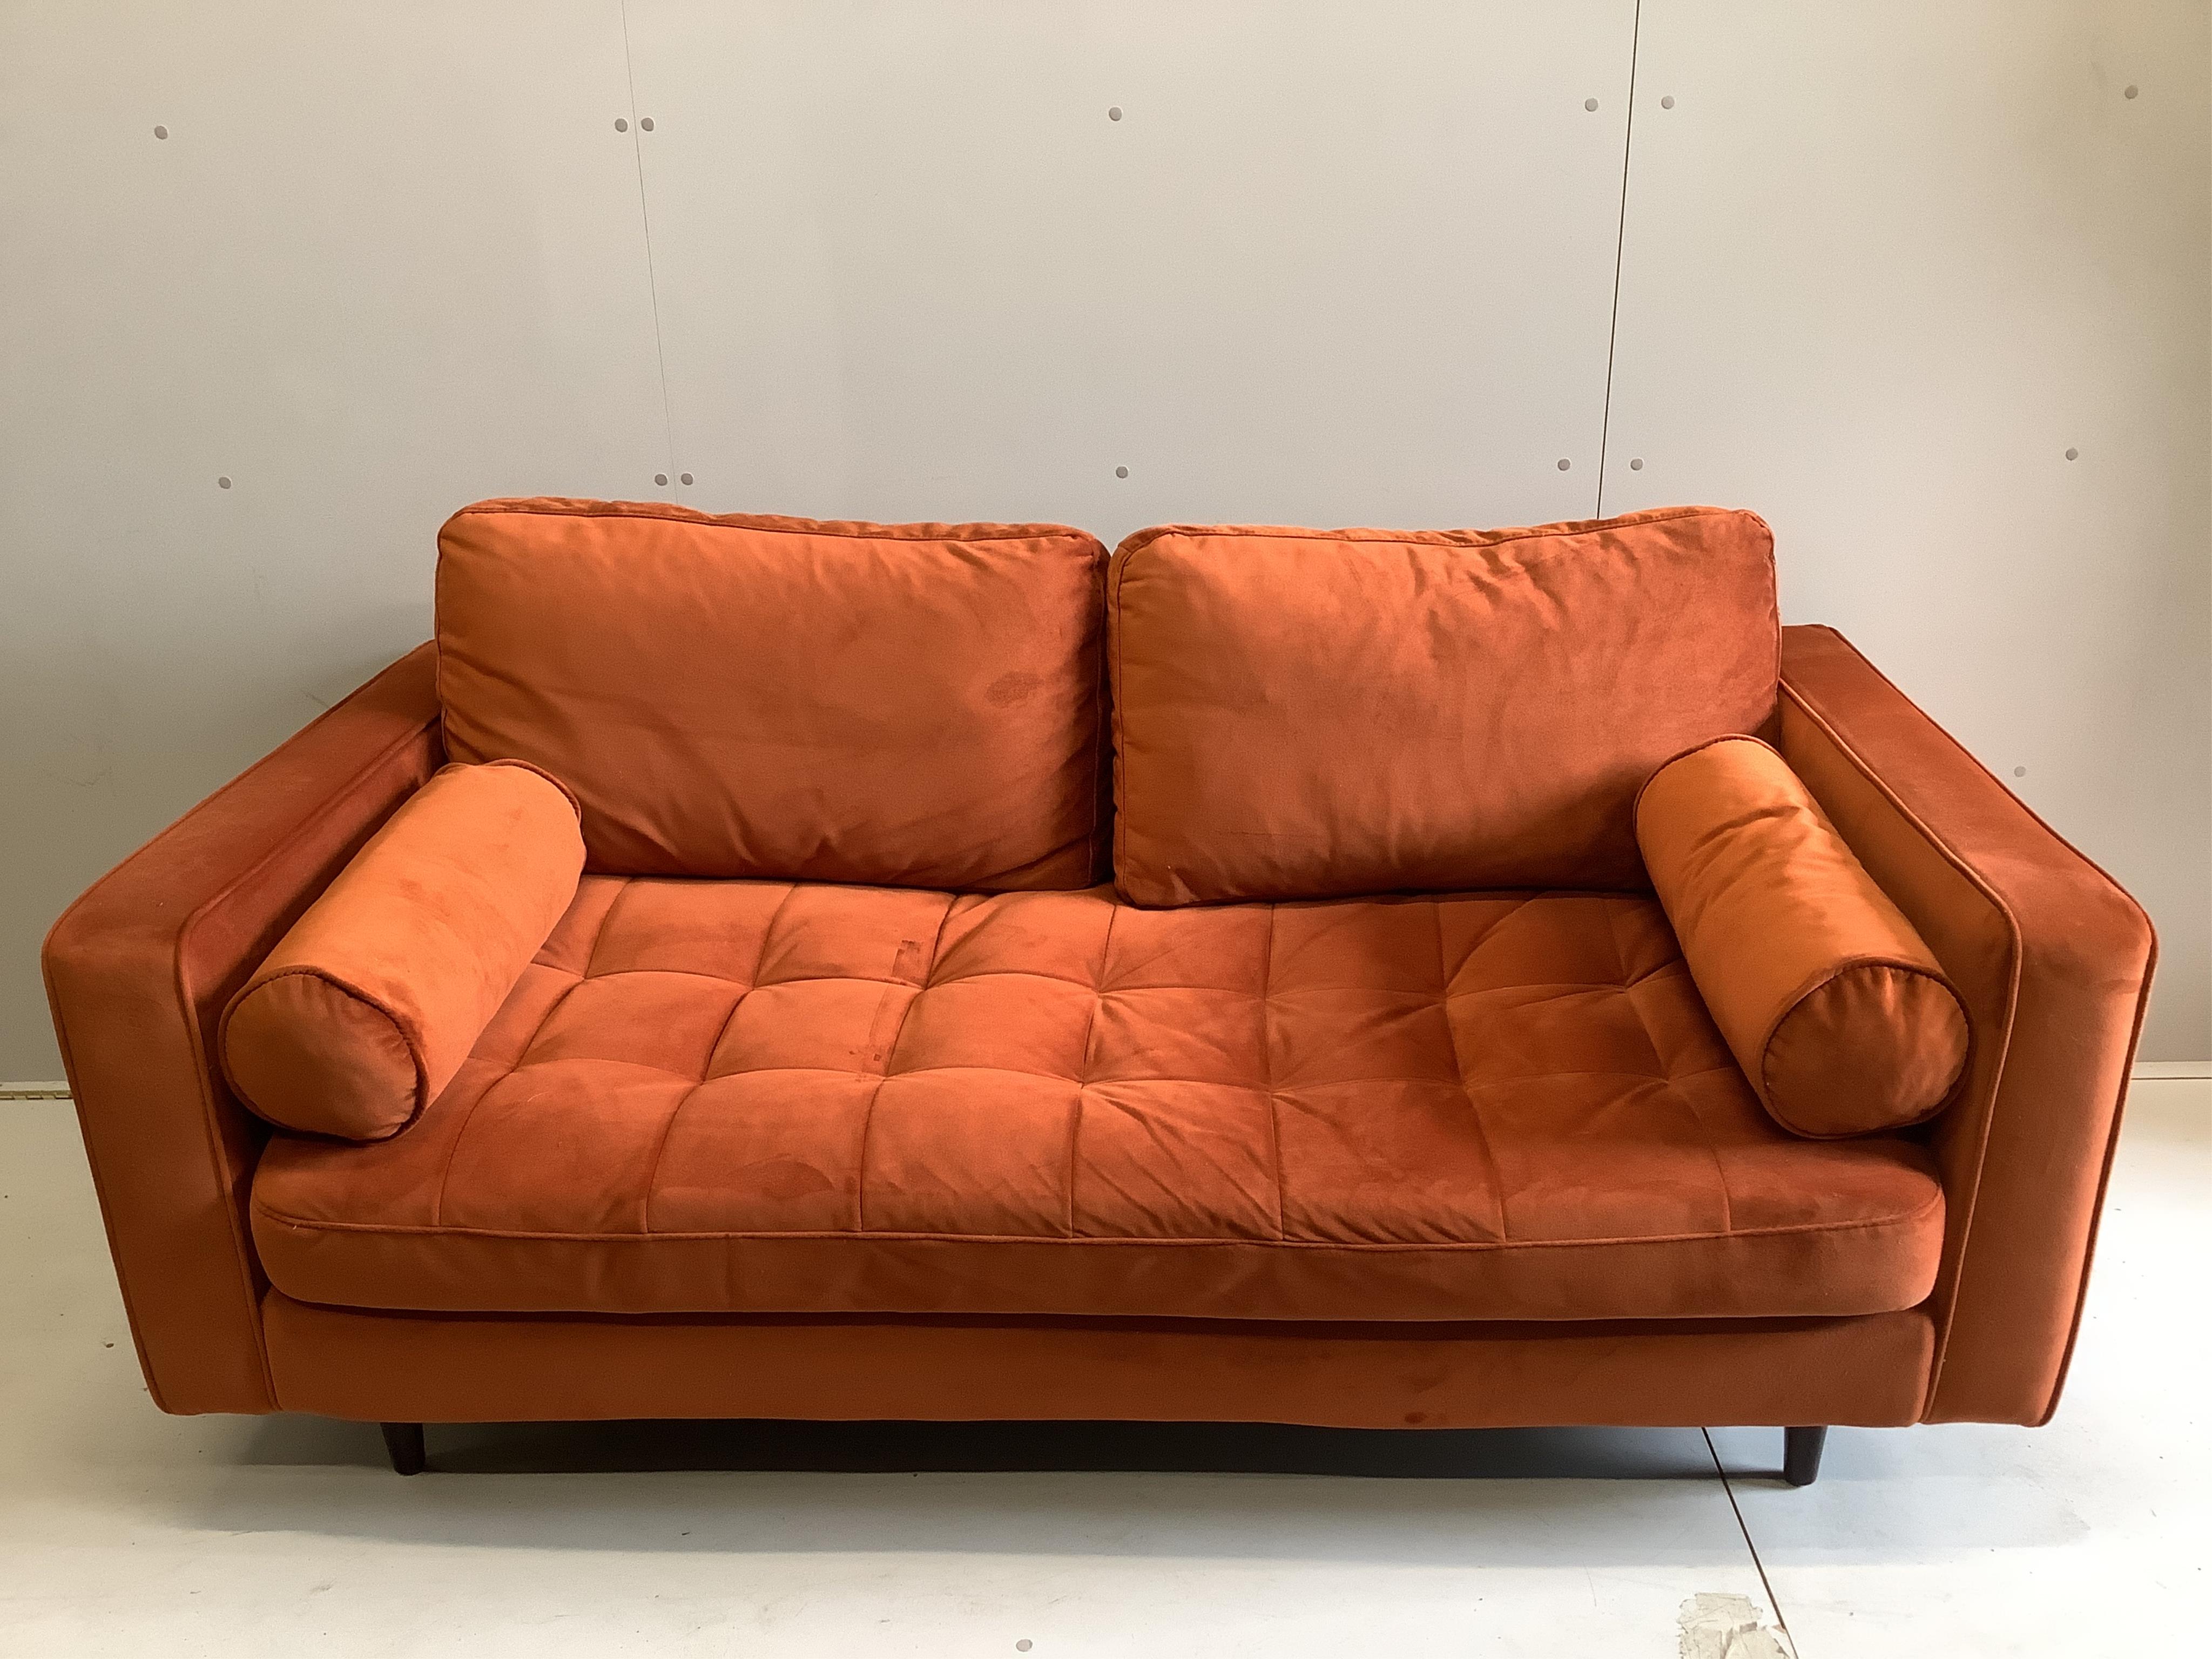 A Made.Com. Contemporary sofa, width 190cm, depth 95cm, height 84cm